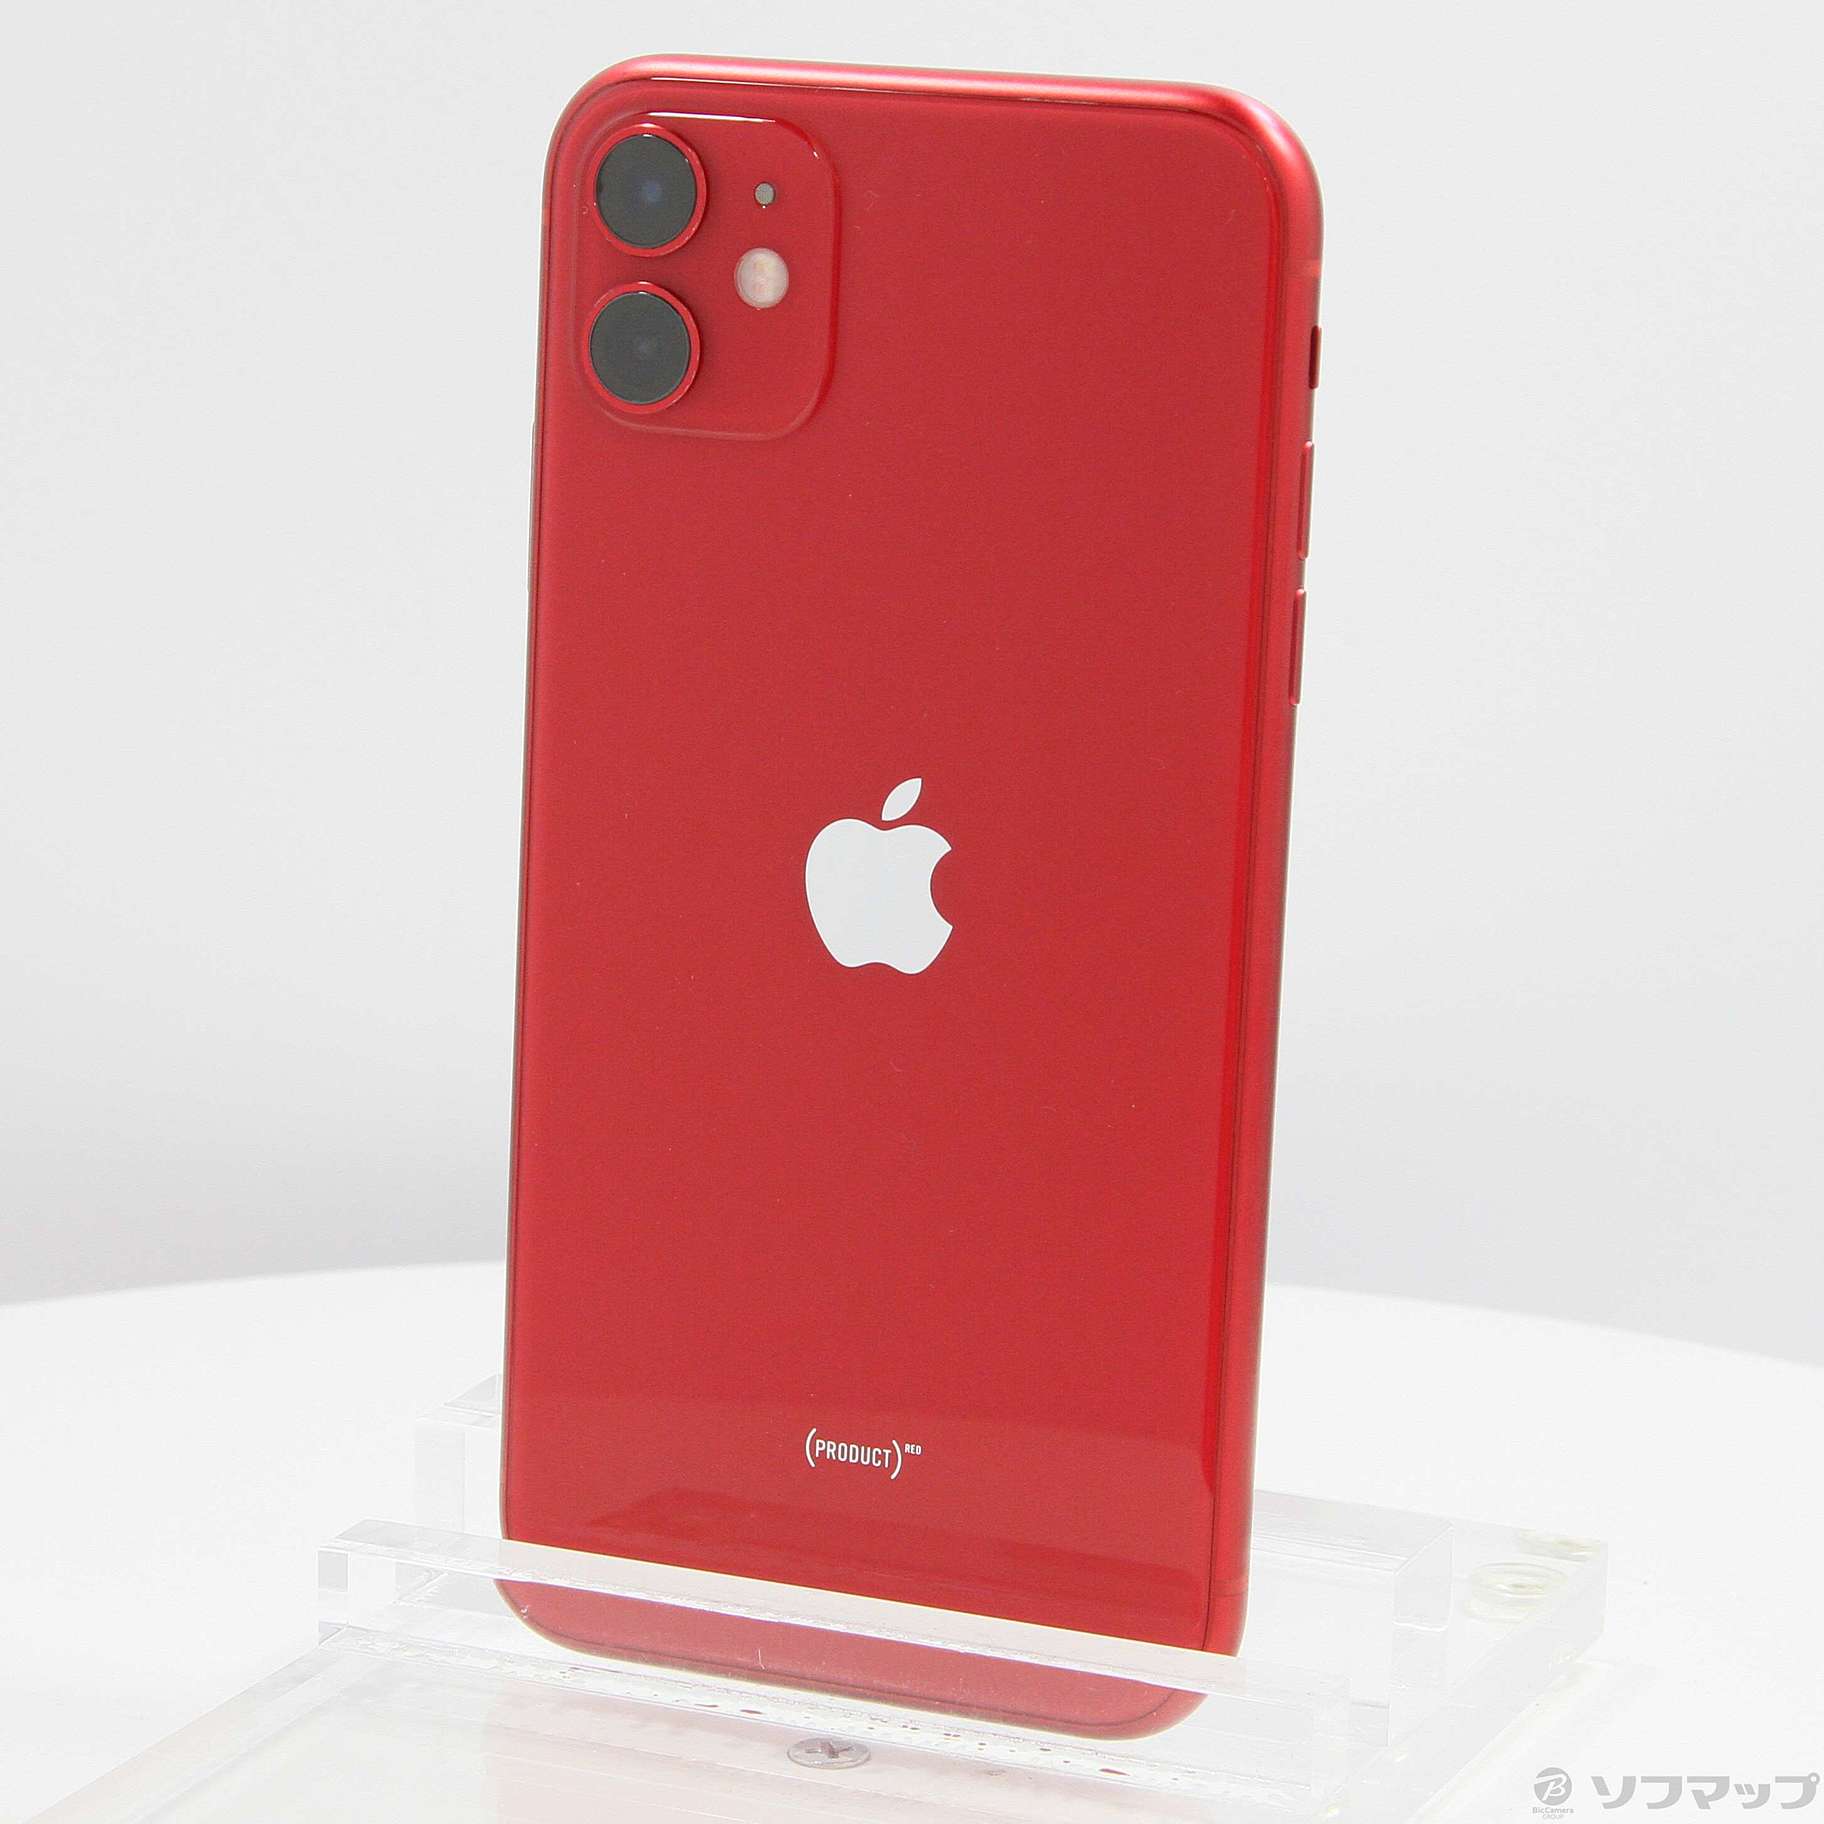 コメントありがとうございますiPhone 11 (PRODUCT)RED 256 GB Softbank 